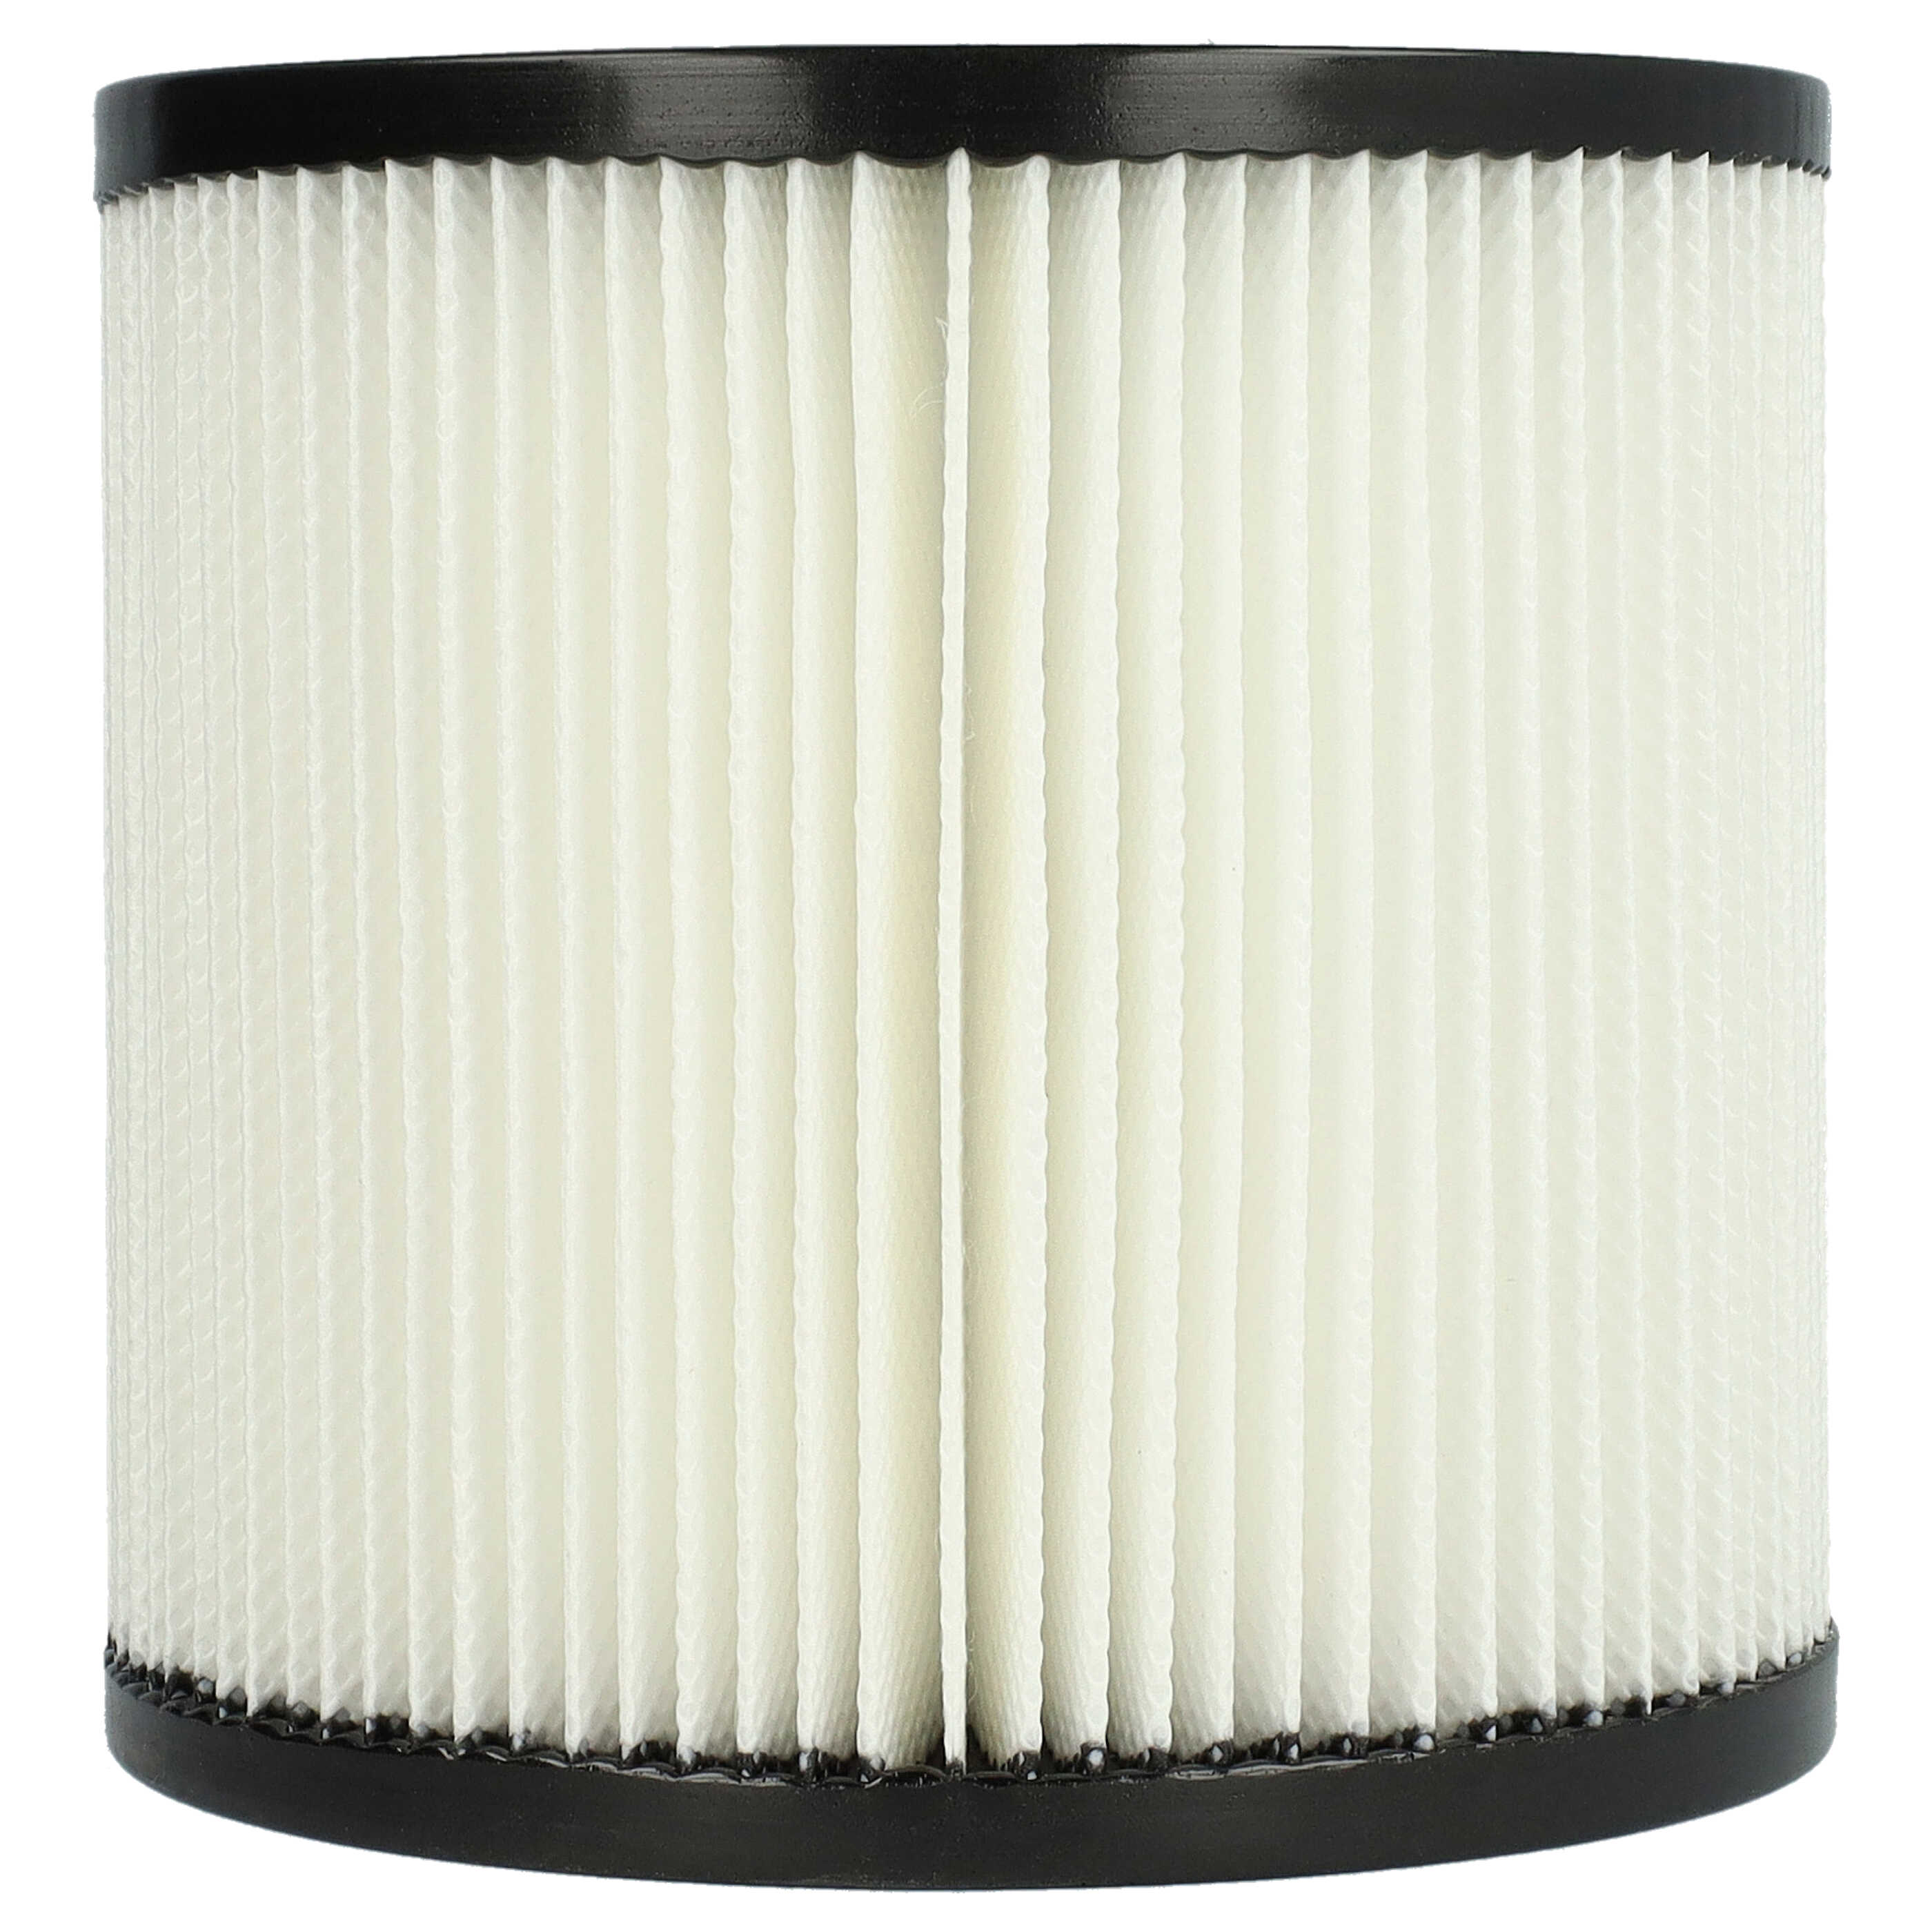 Filtro reemplaza Kärcher 2.889-219.0 para aspiradora - filtro de cartucho, negro / blanco